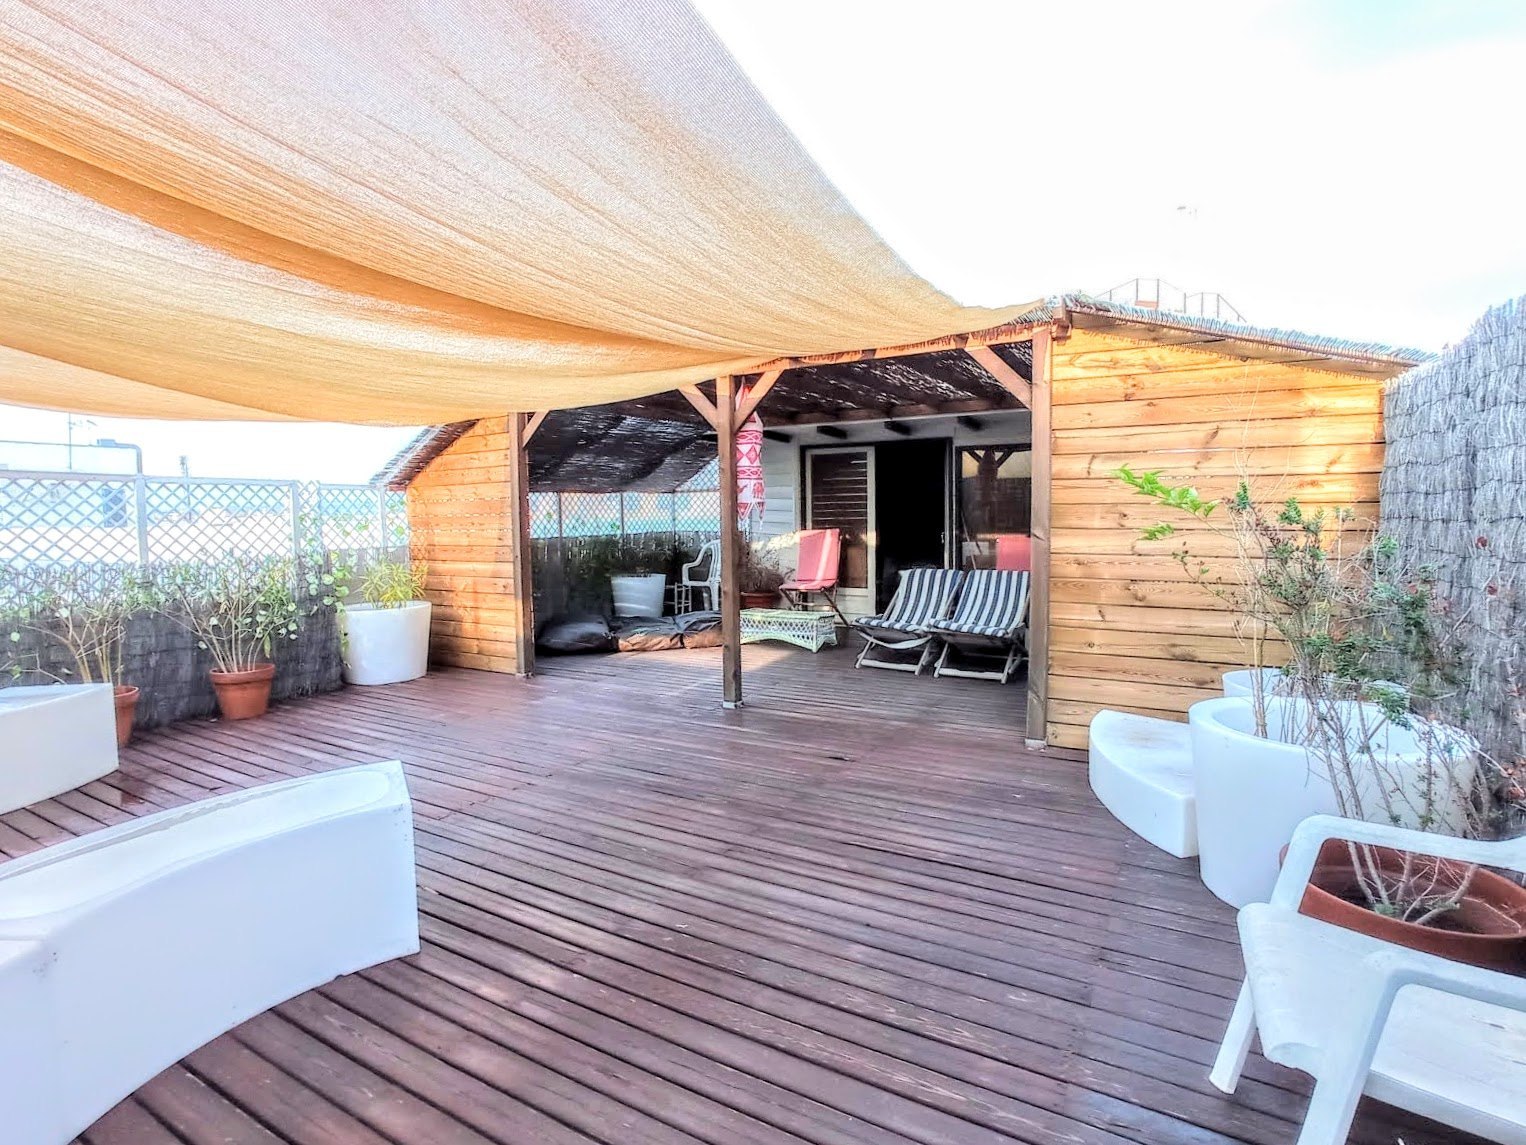 Mooi penthouse in het centrum van Ibiza-stad